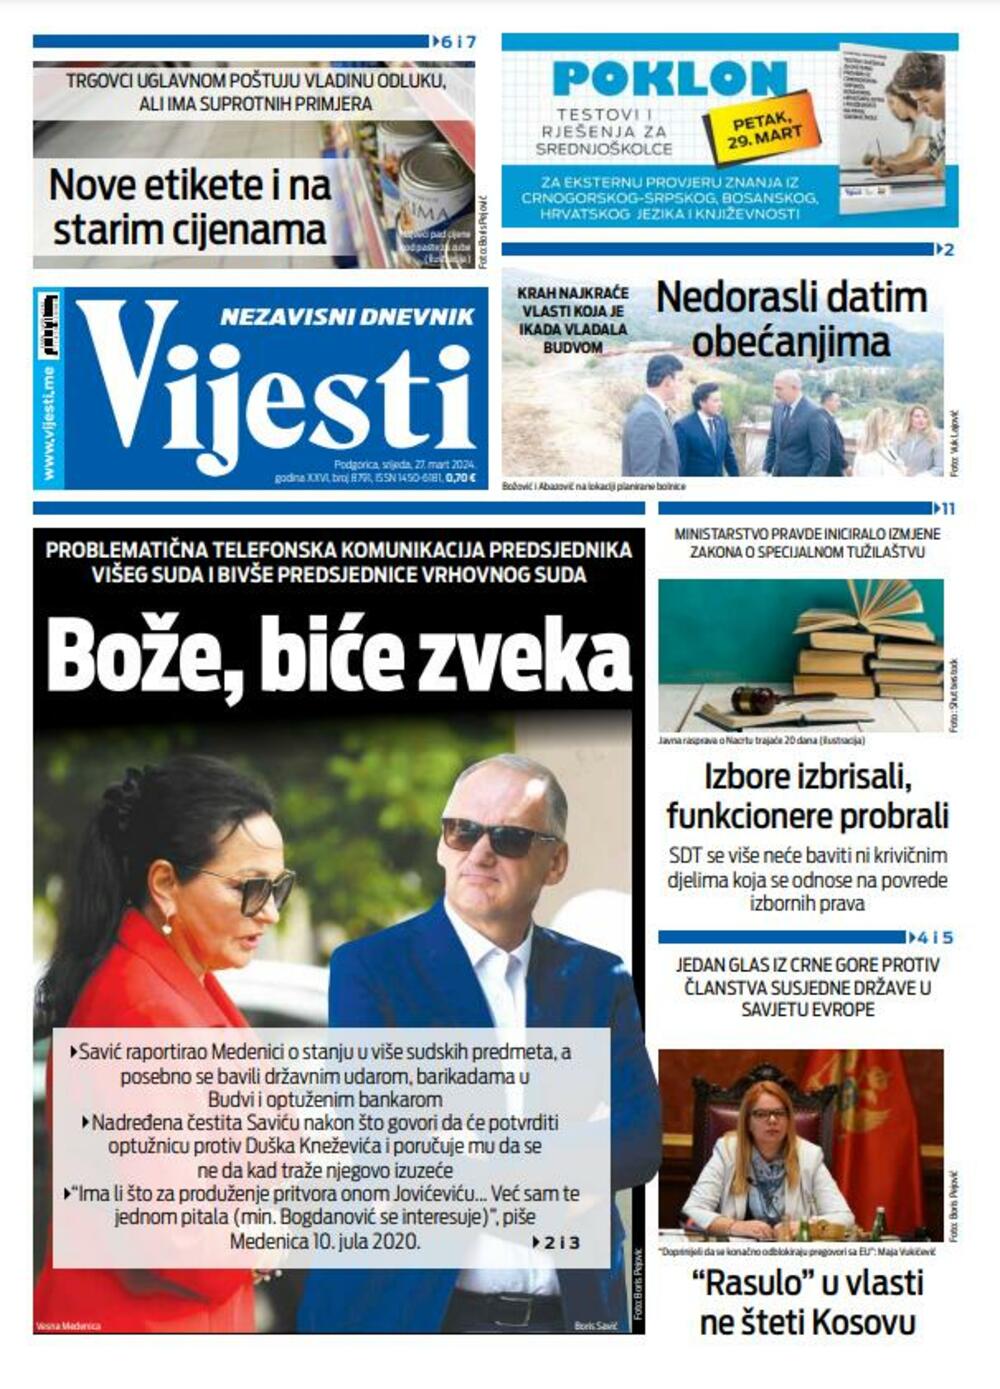 Naslovna strana "Vijesti" za 27. mart 2024., Foto: Vijesti